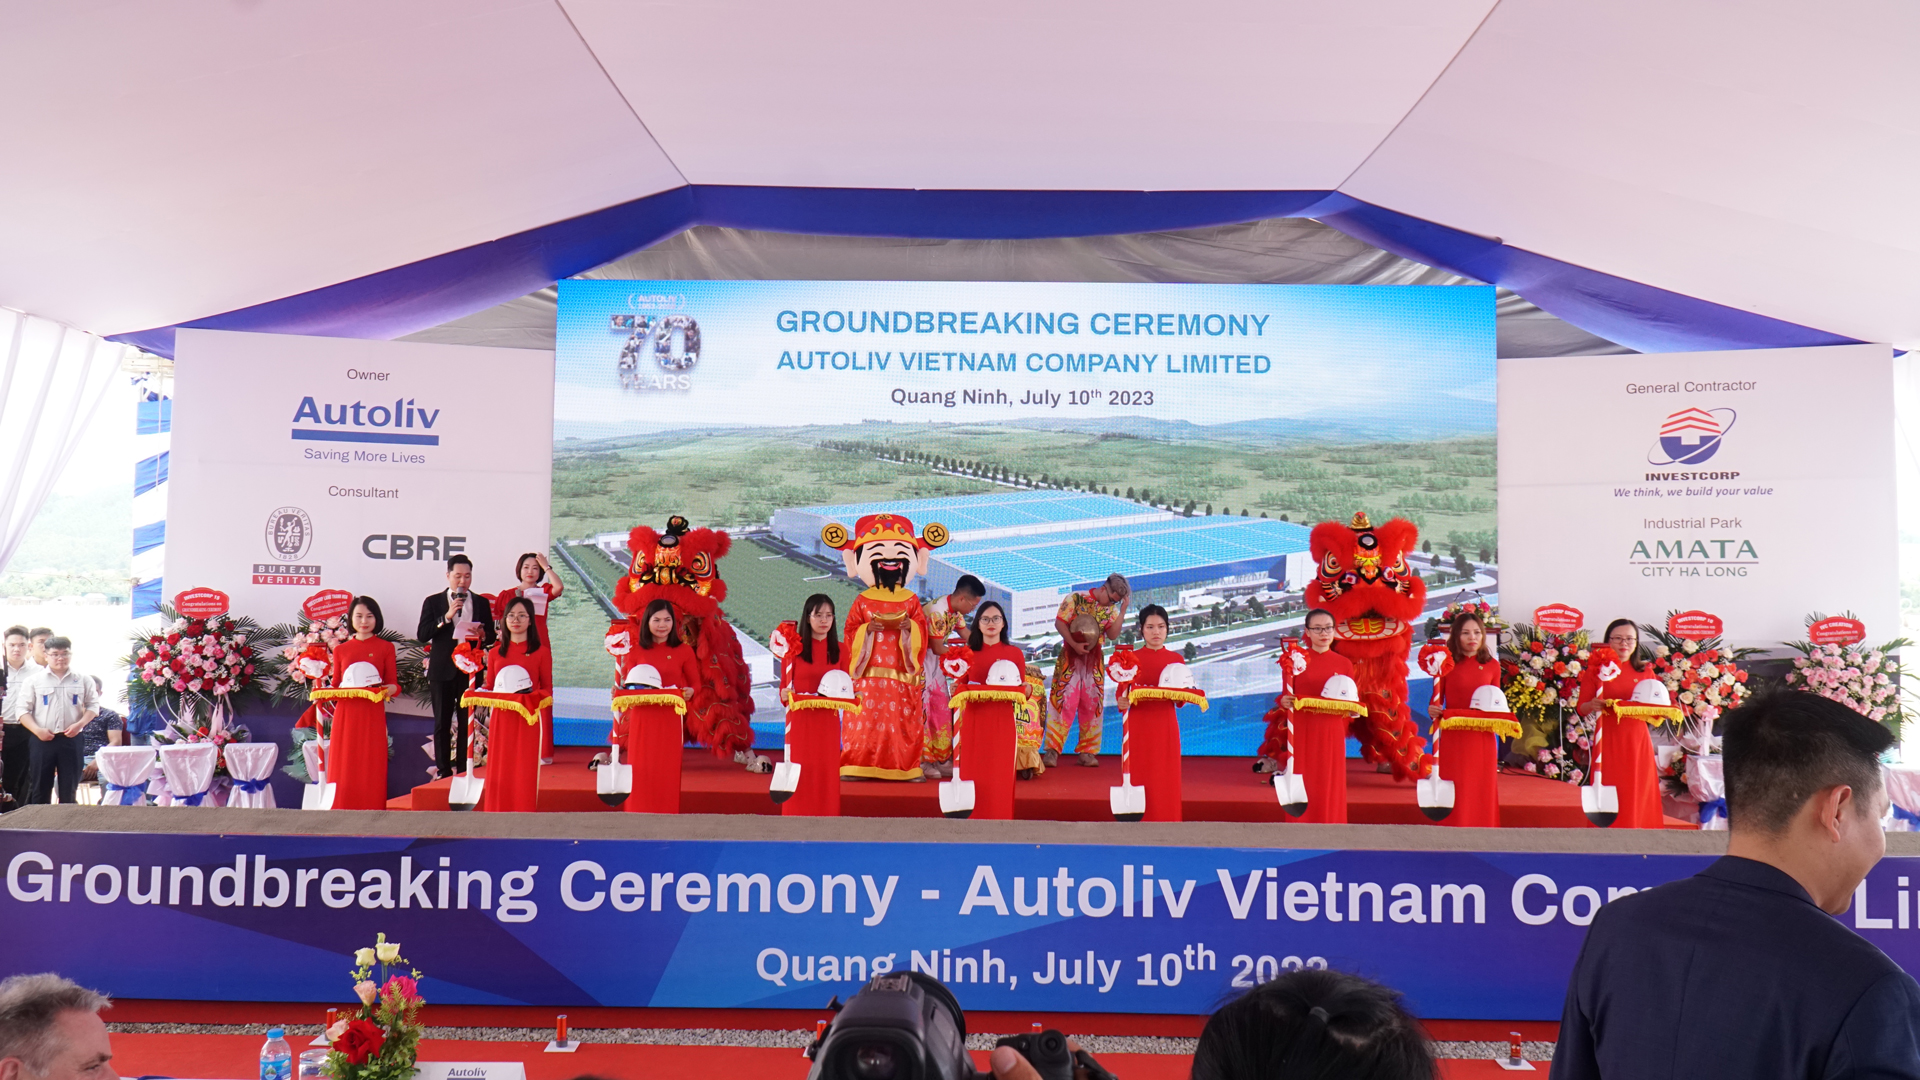 Autoliv Vietnam工場プロジェクト起工式